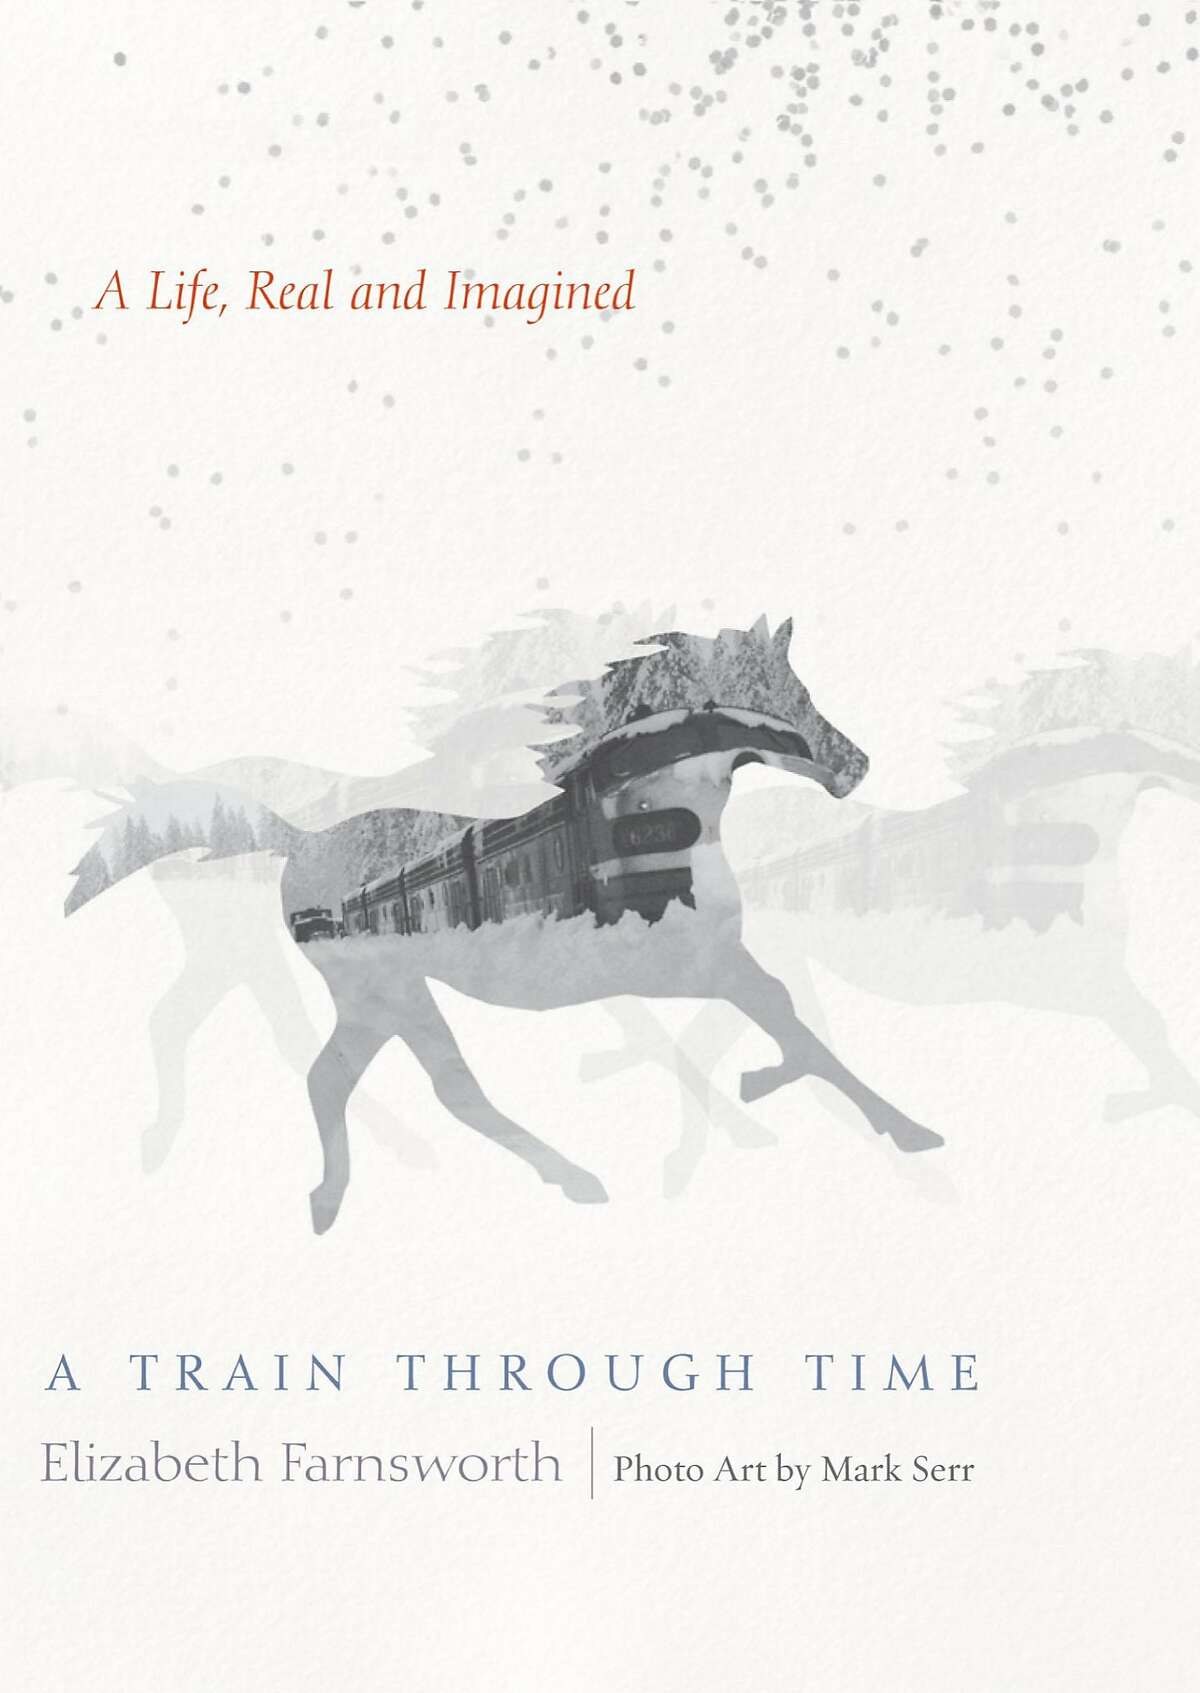 "A Train Through Time"